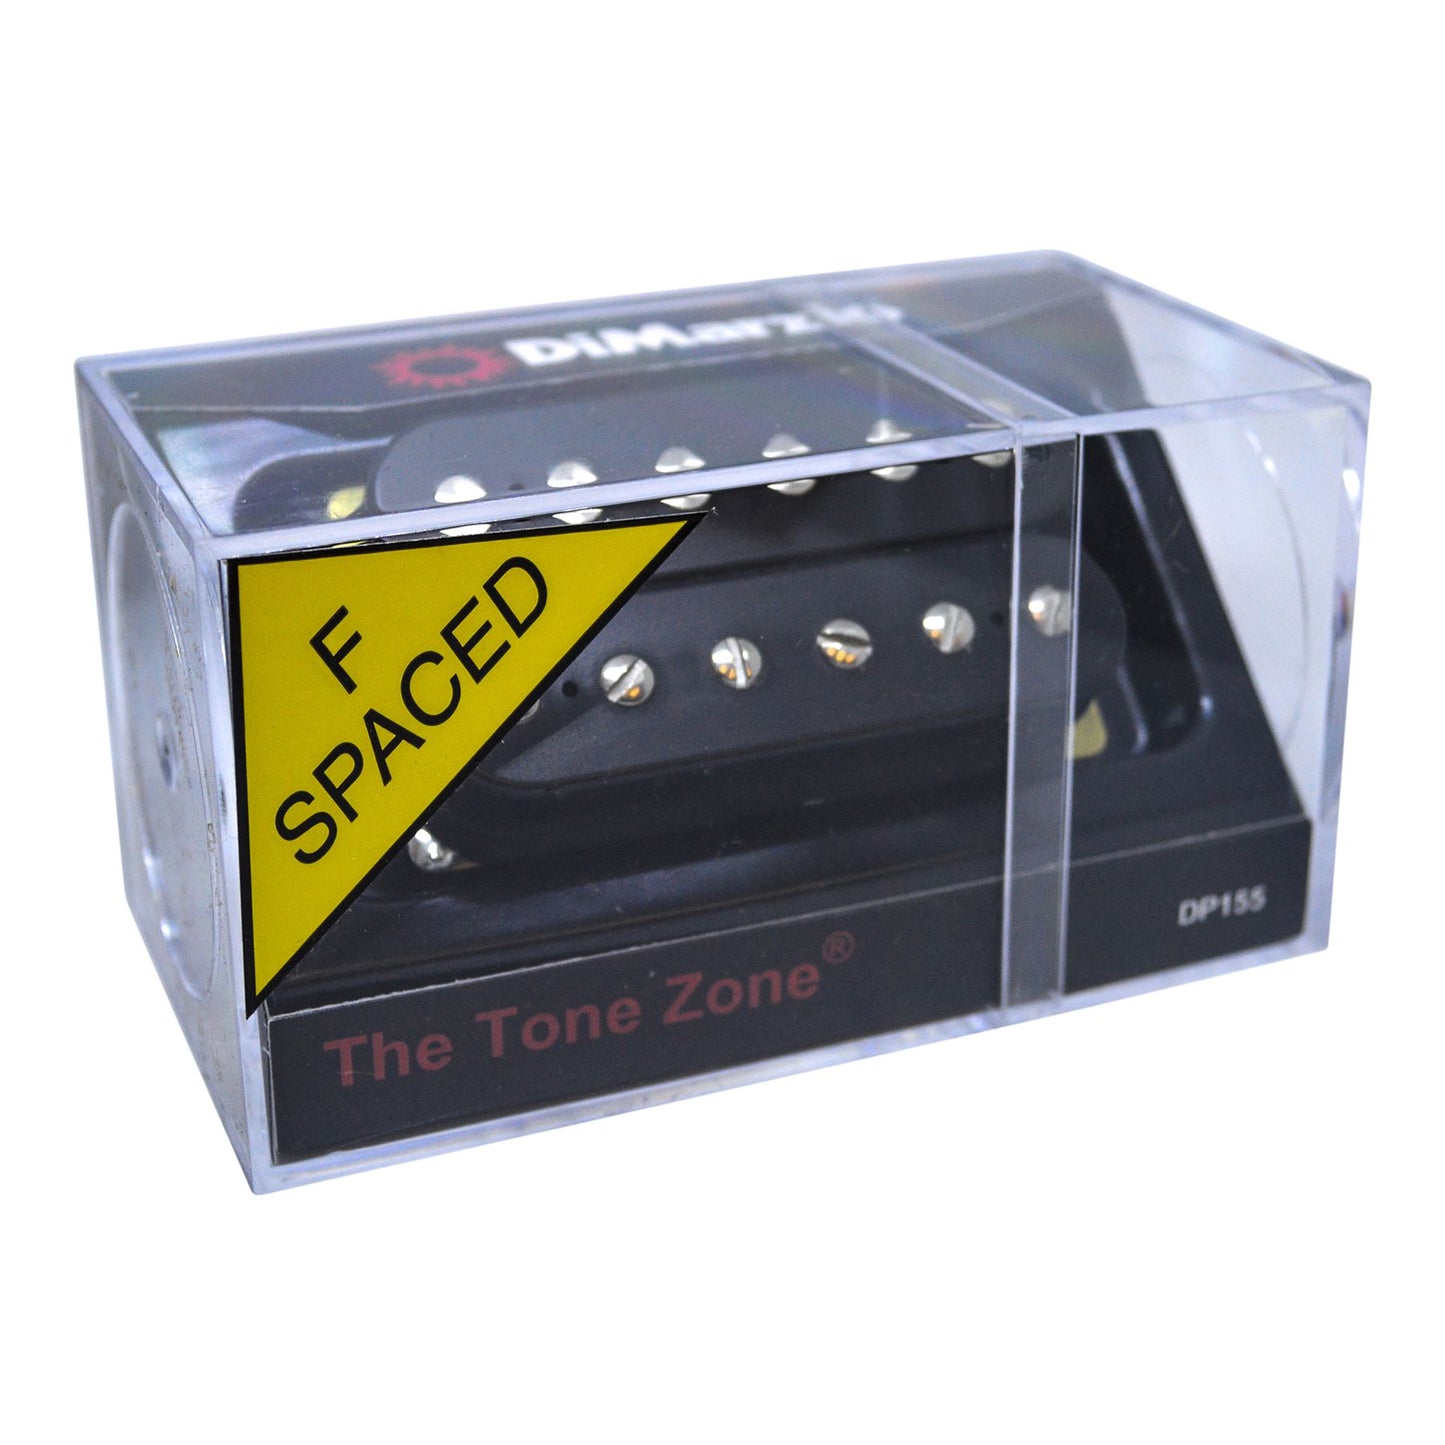 DiMarzio The Tone Zone F-spaced Humbucker Pickup - Black